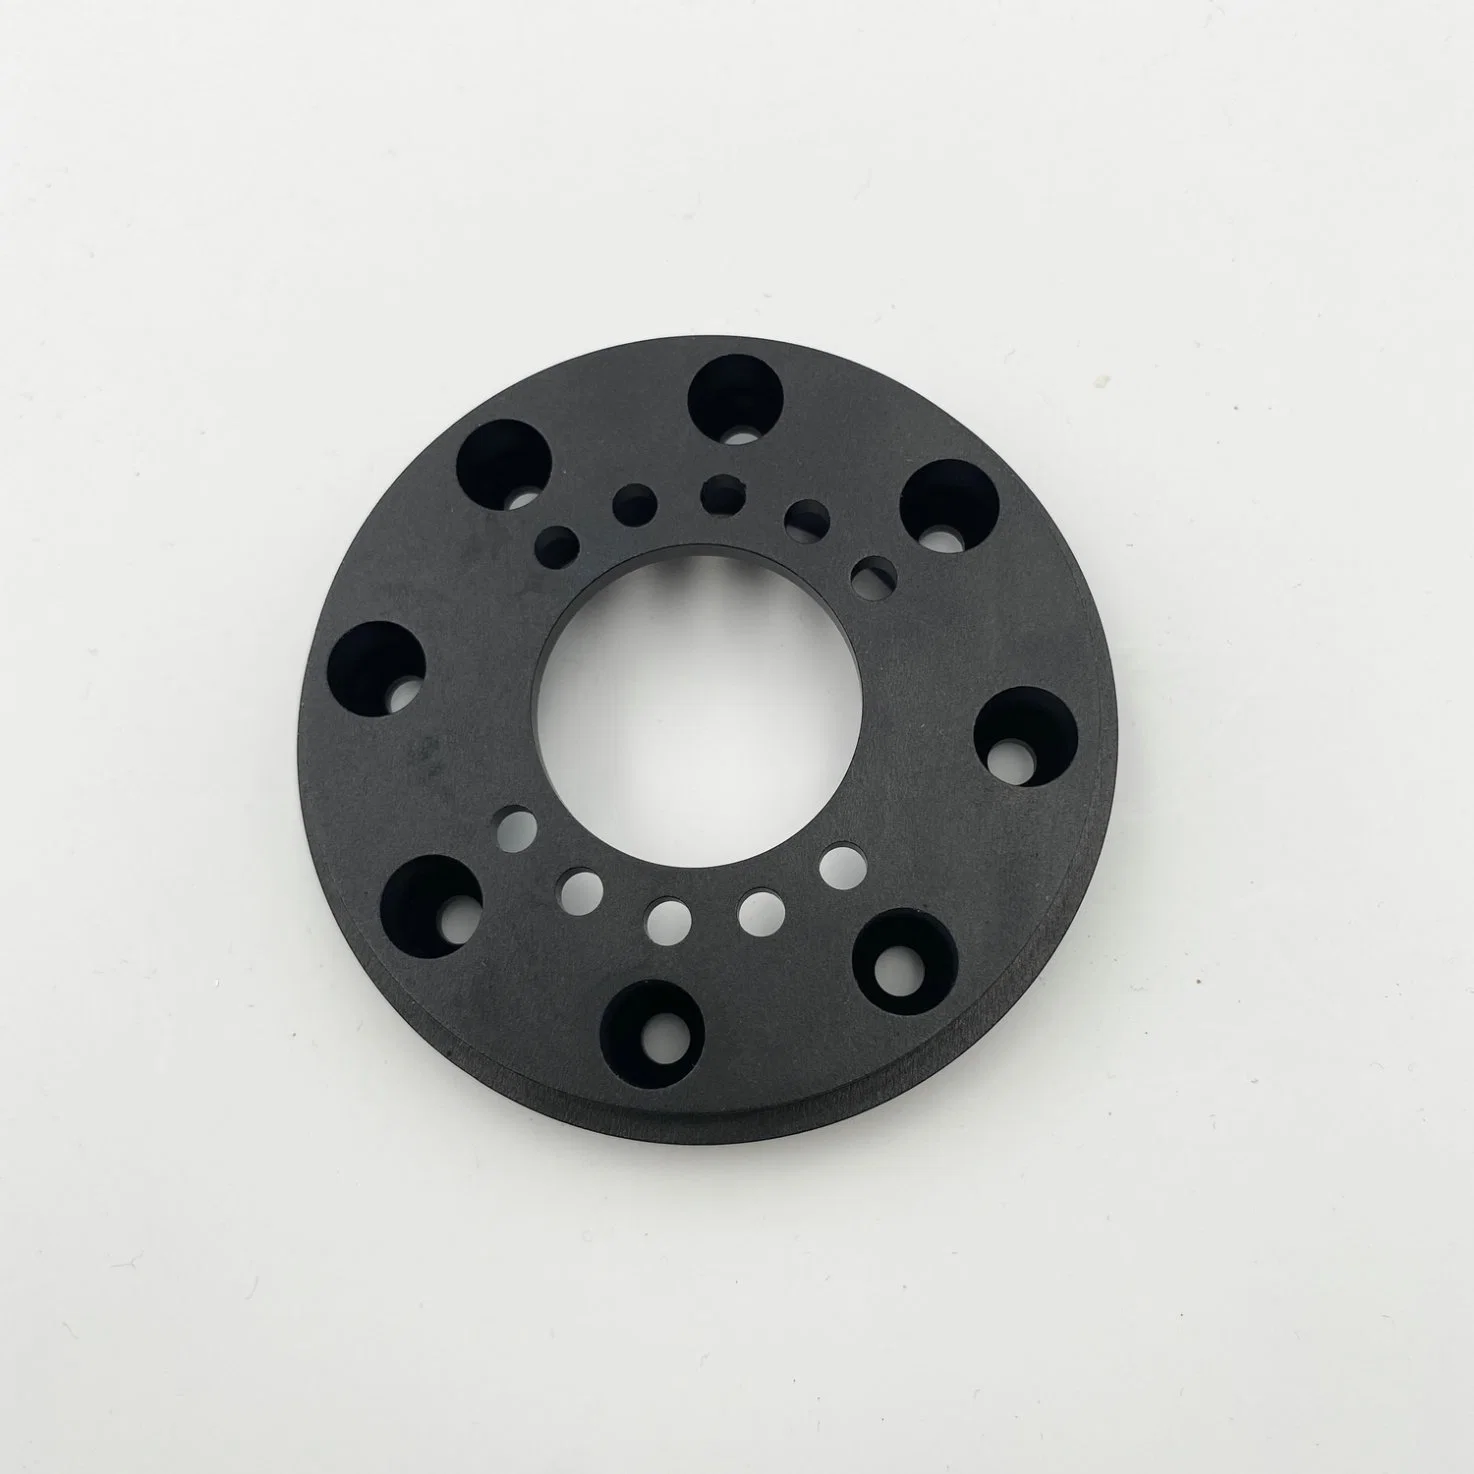 تصنيع المعدات الأصلية (OEM) الدقة المخصصة الدقة الأسود طبقة من الألومنيوم المؤين CNC الدراجة الكهربائية الأجزاء